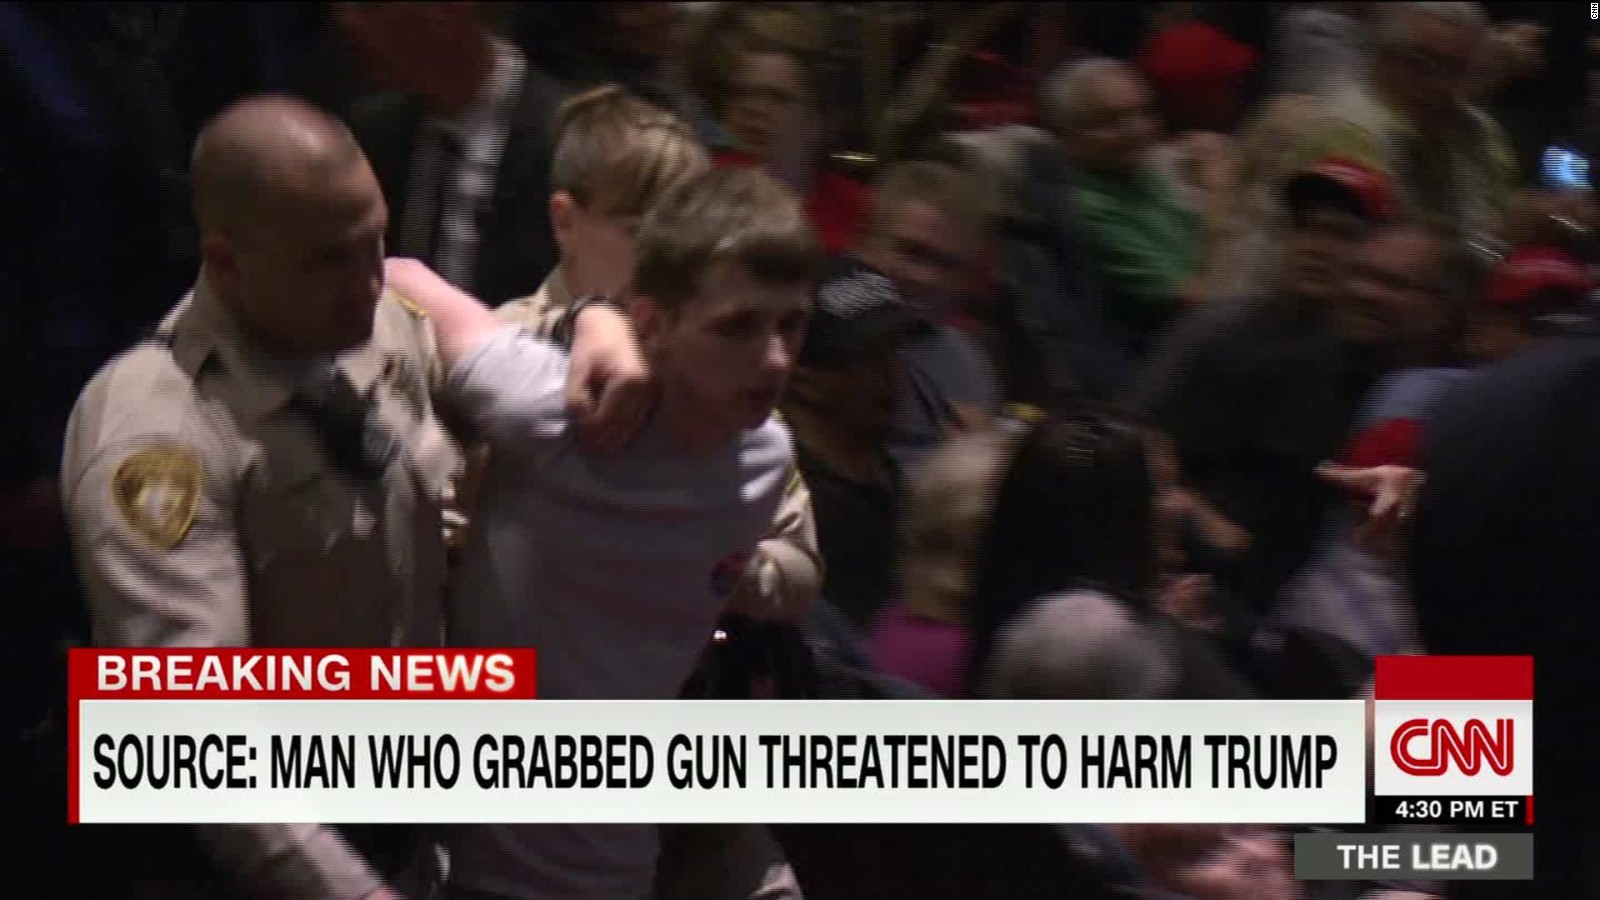 Man Who Attempted To Grab Gun At Rally Wanted To Kill Trump